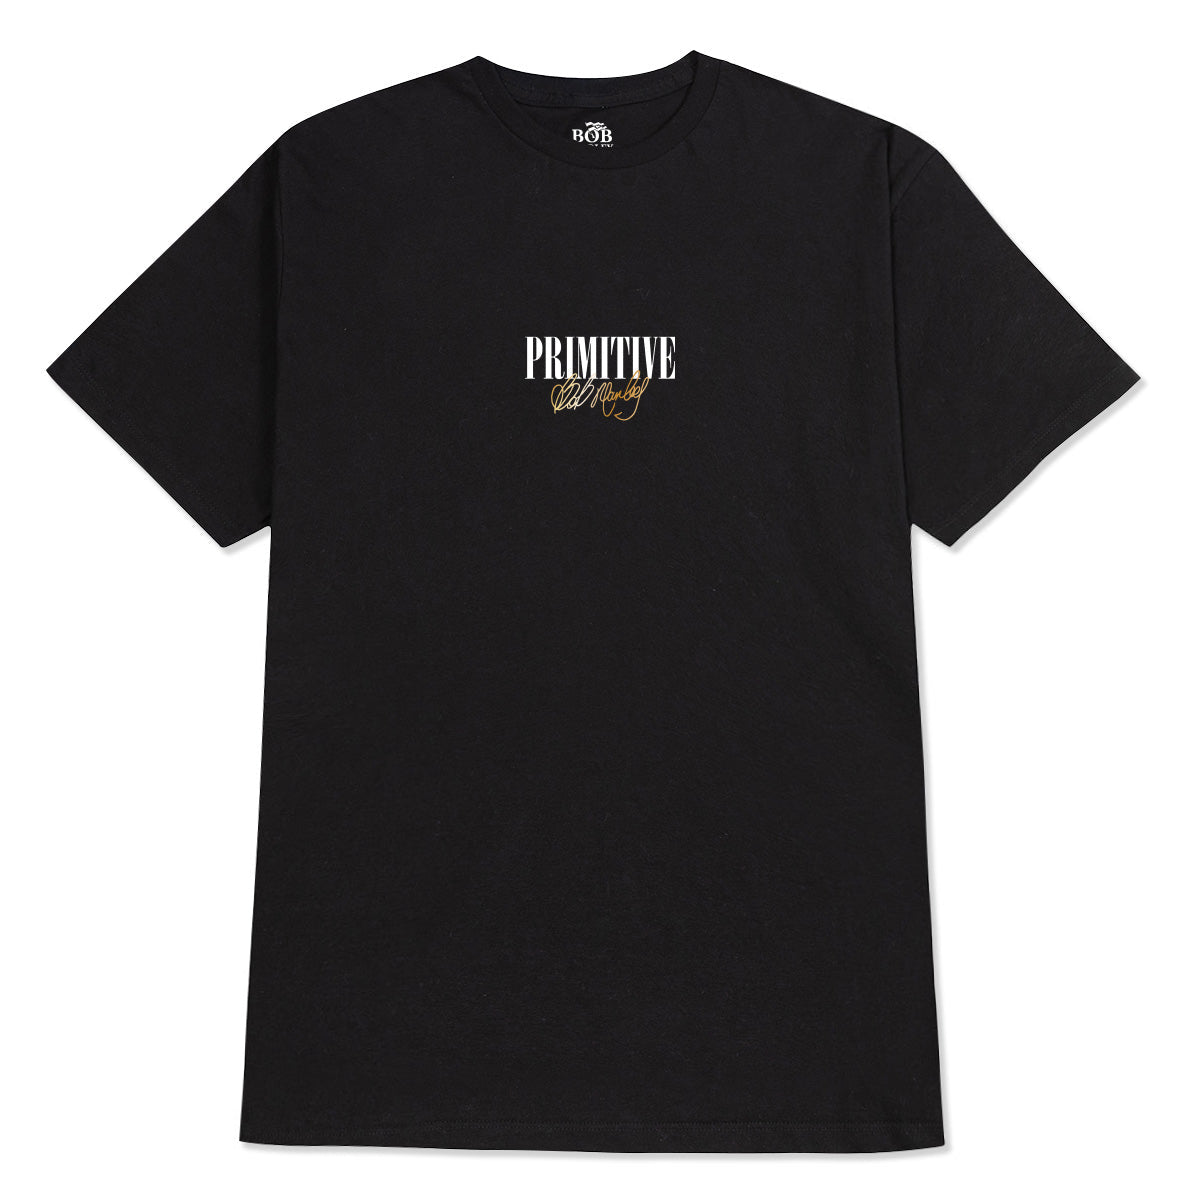 Primitive x Bob Marley Forever T-Shirt - Black image 2